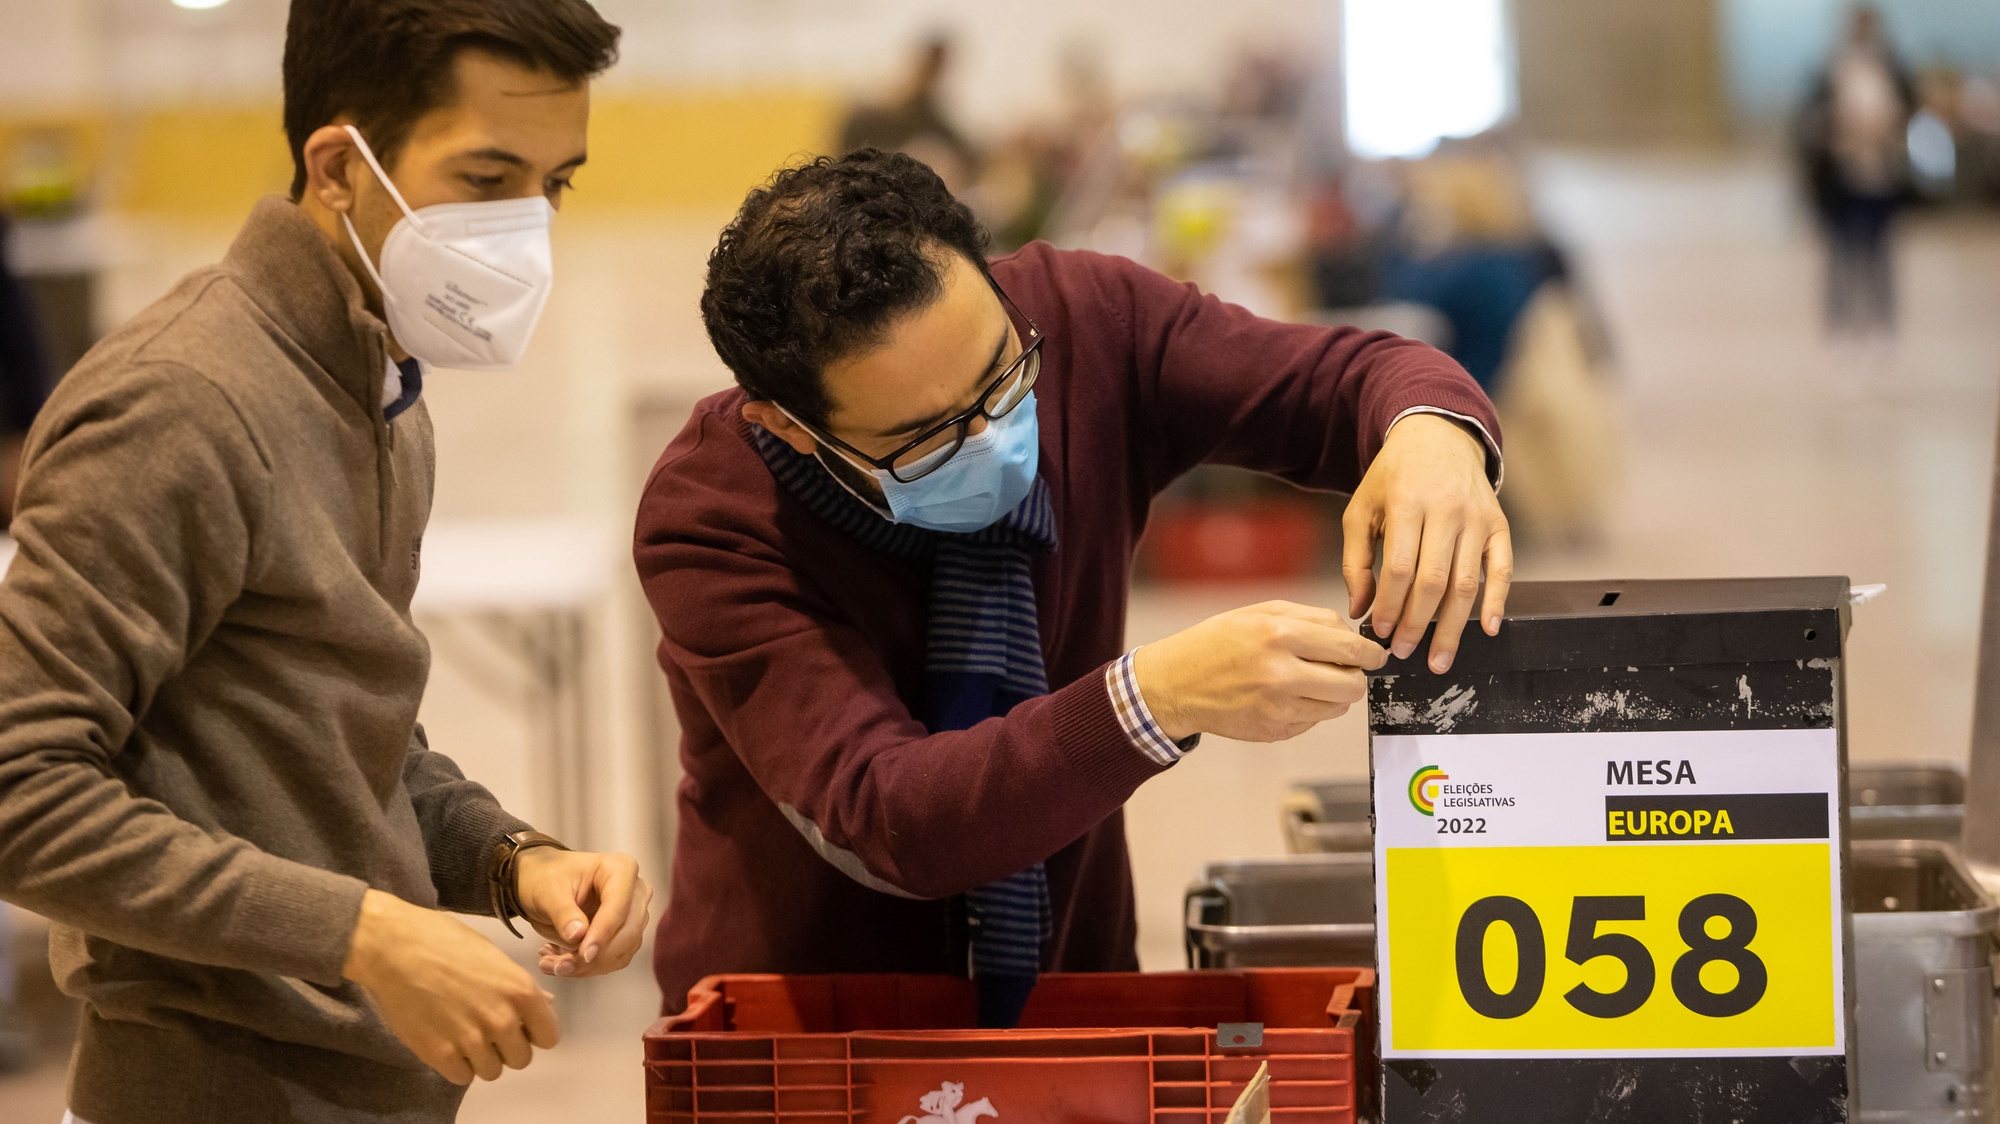 Delegados realizam a contagem de votos dos eleitores no estrangeiro das eleições legislativas, na FIL, em Lisboa, 09 de fevereiro de 2022. JOSÉ SENA GOULÃO/LUSA